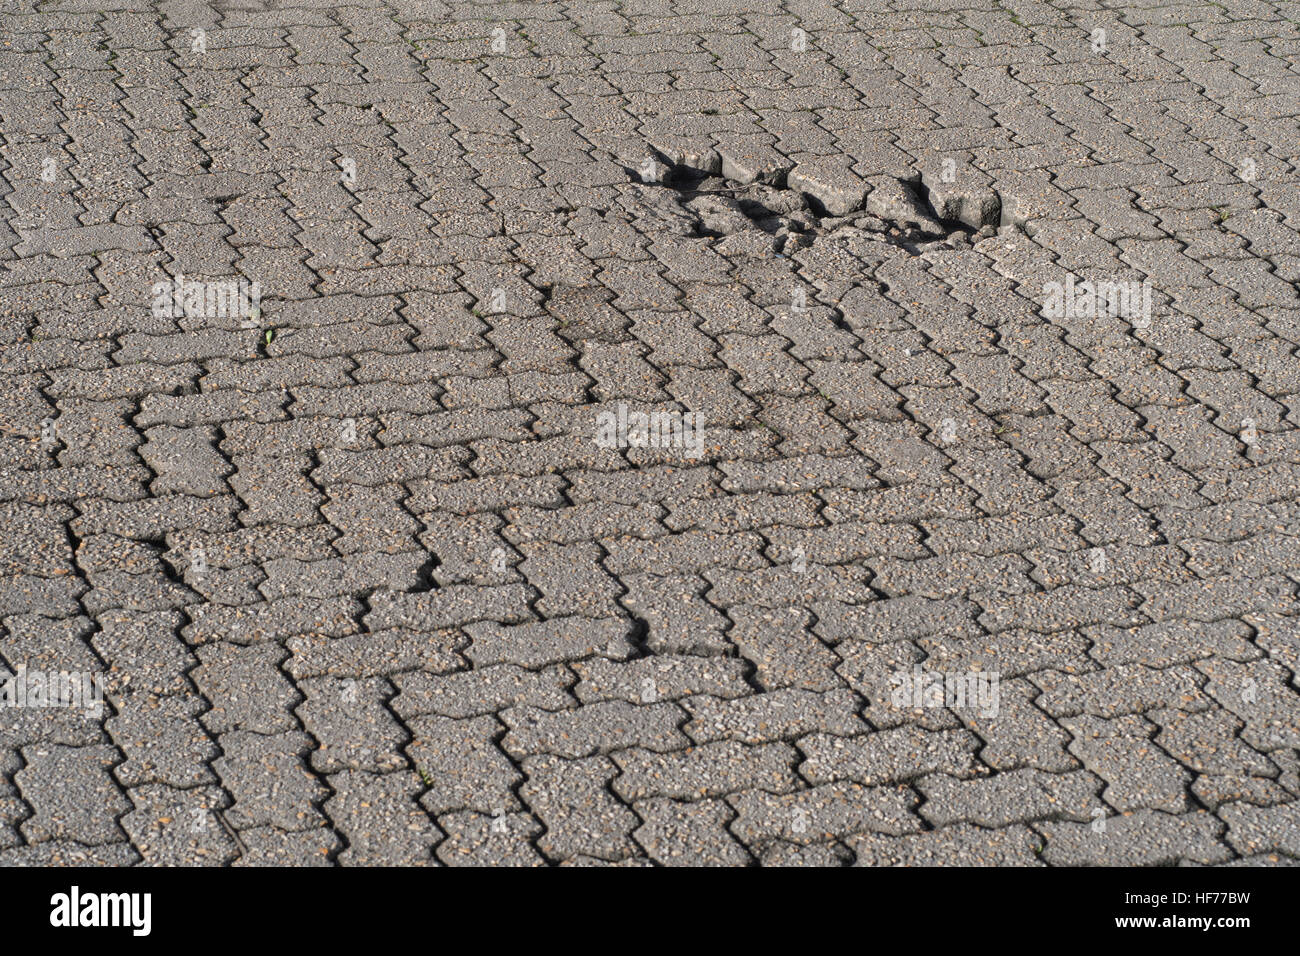 Industrielle Yard/brick road Oberfläche mit Schlagloch. Potenzial für Infrastruktur abstraktes Konzept. Möglich schlechter Verarbeitung Metapher. Stockfoto